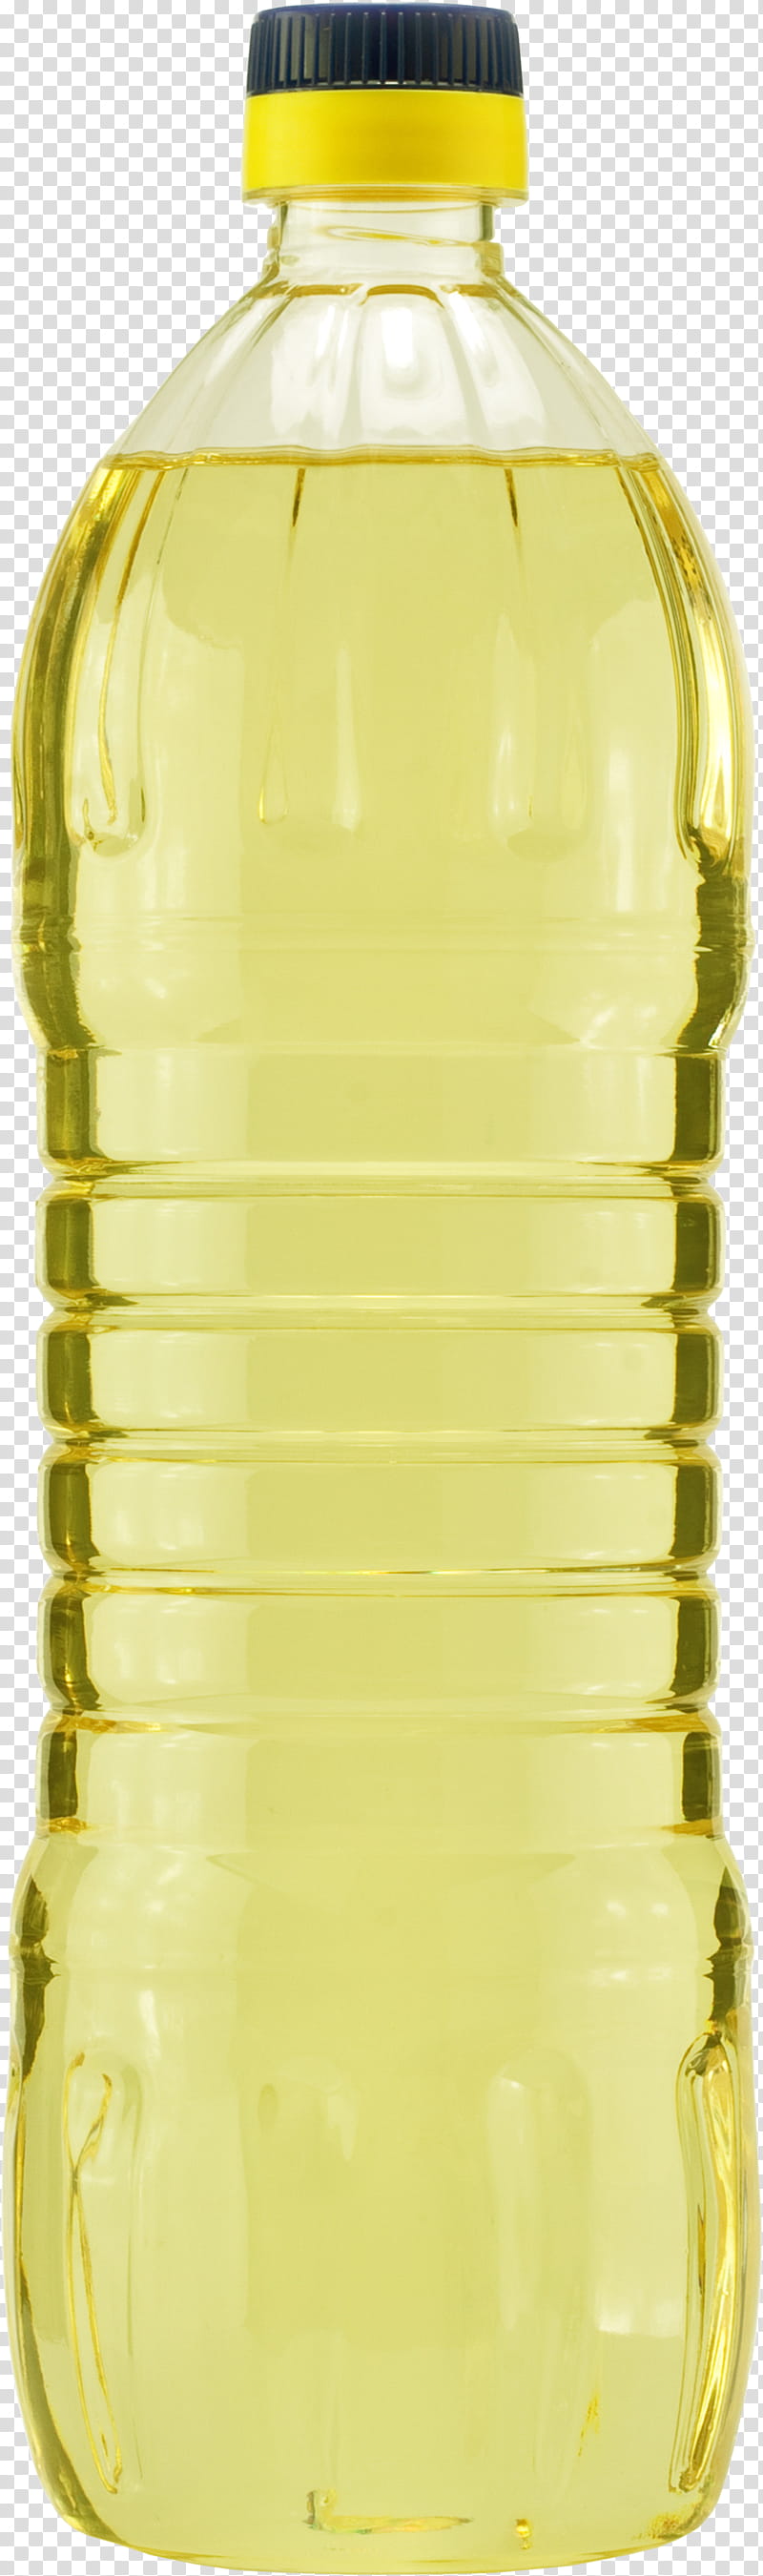 Plastic Bottle, Soybean Oil, Sunflower Oil, Vegetable Oil, Olive Oil, Glass Bottle, Water Bottles, Liquid transparent background PNG clipart